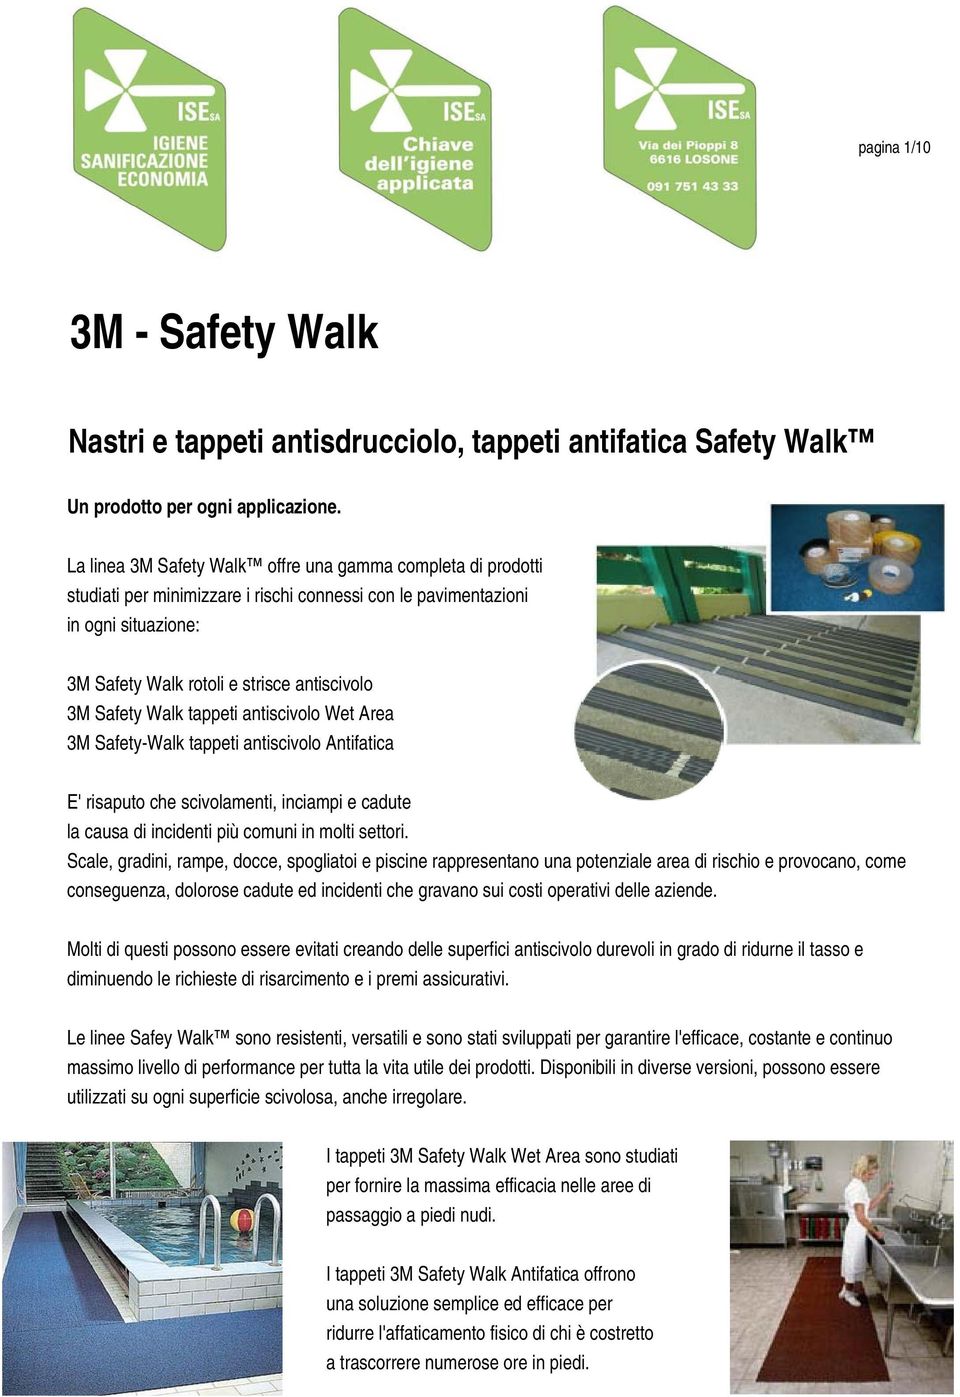 Walk tappeti antiscivolo Wet Area 3M Safety-Walk tappeti antiscivolo Antifatica E' risaputo che scivolamenti, inciampi e cadute la causa di incidenti più comuni in molti settori.